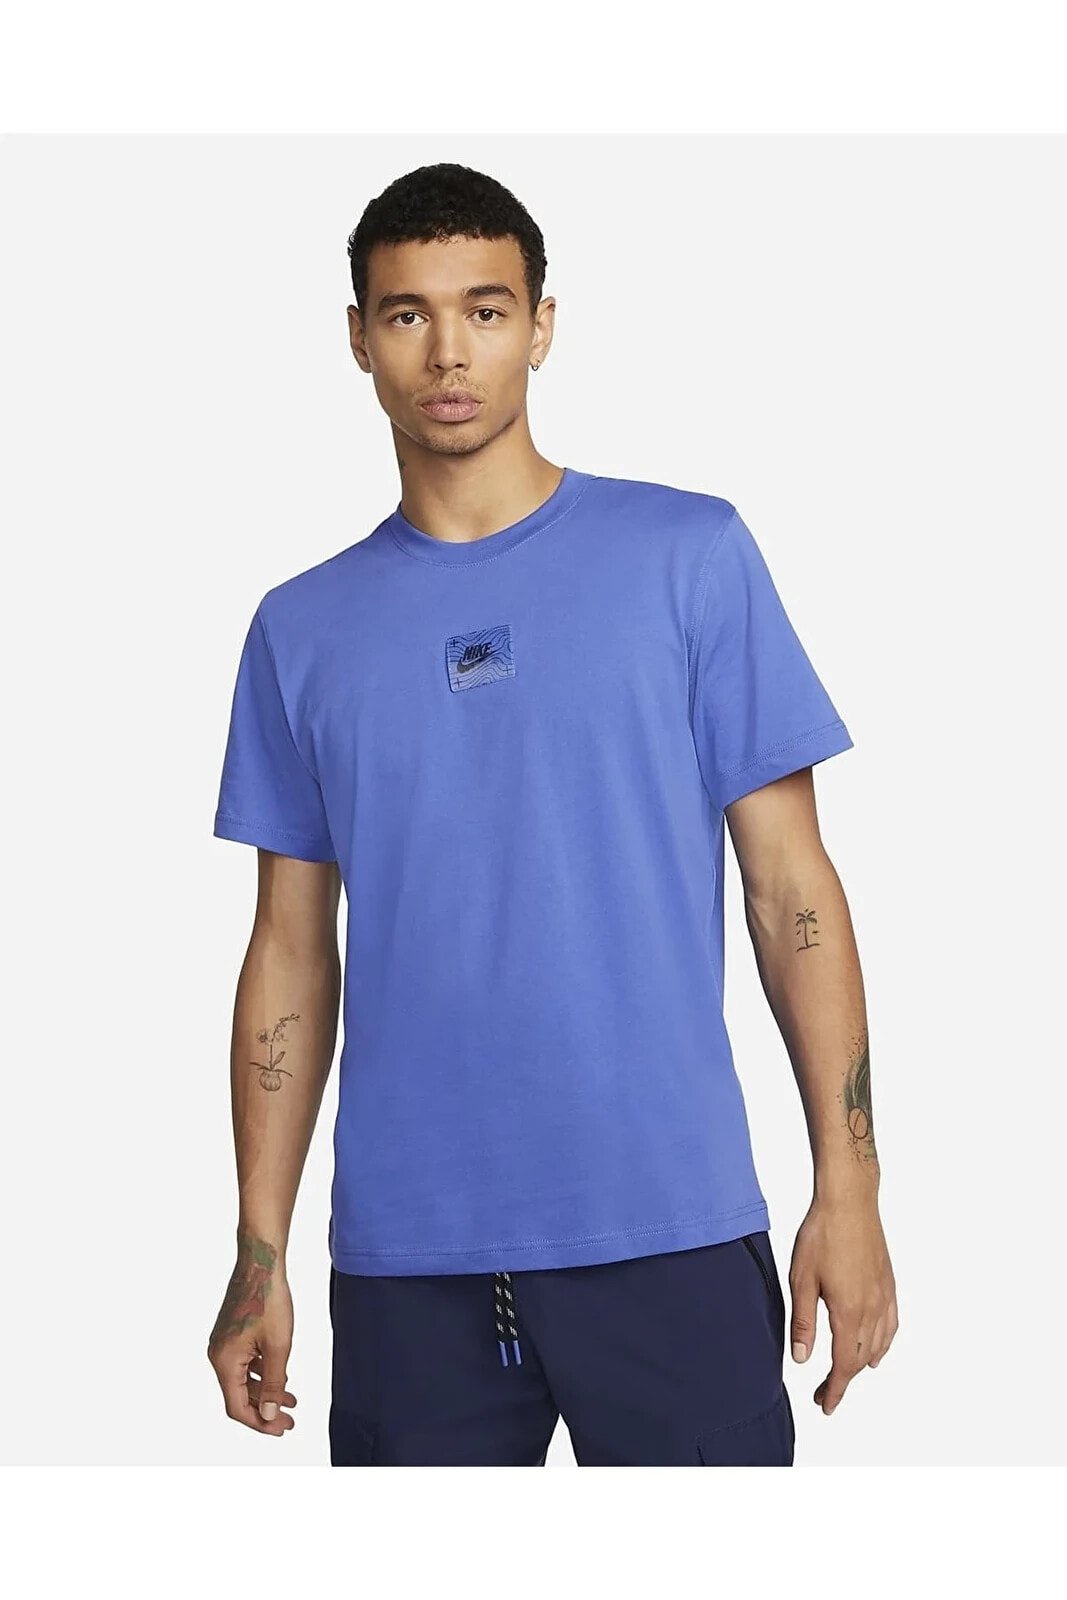 Sportswear Air Max Men's T-shirt - Blue Erkek T-shirt Mavi Dv2335-449